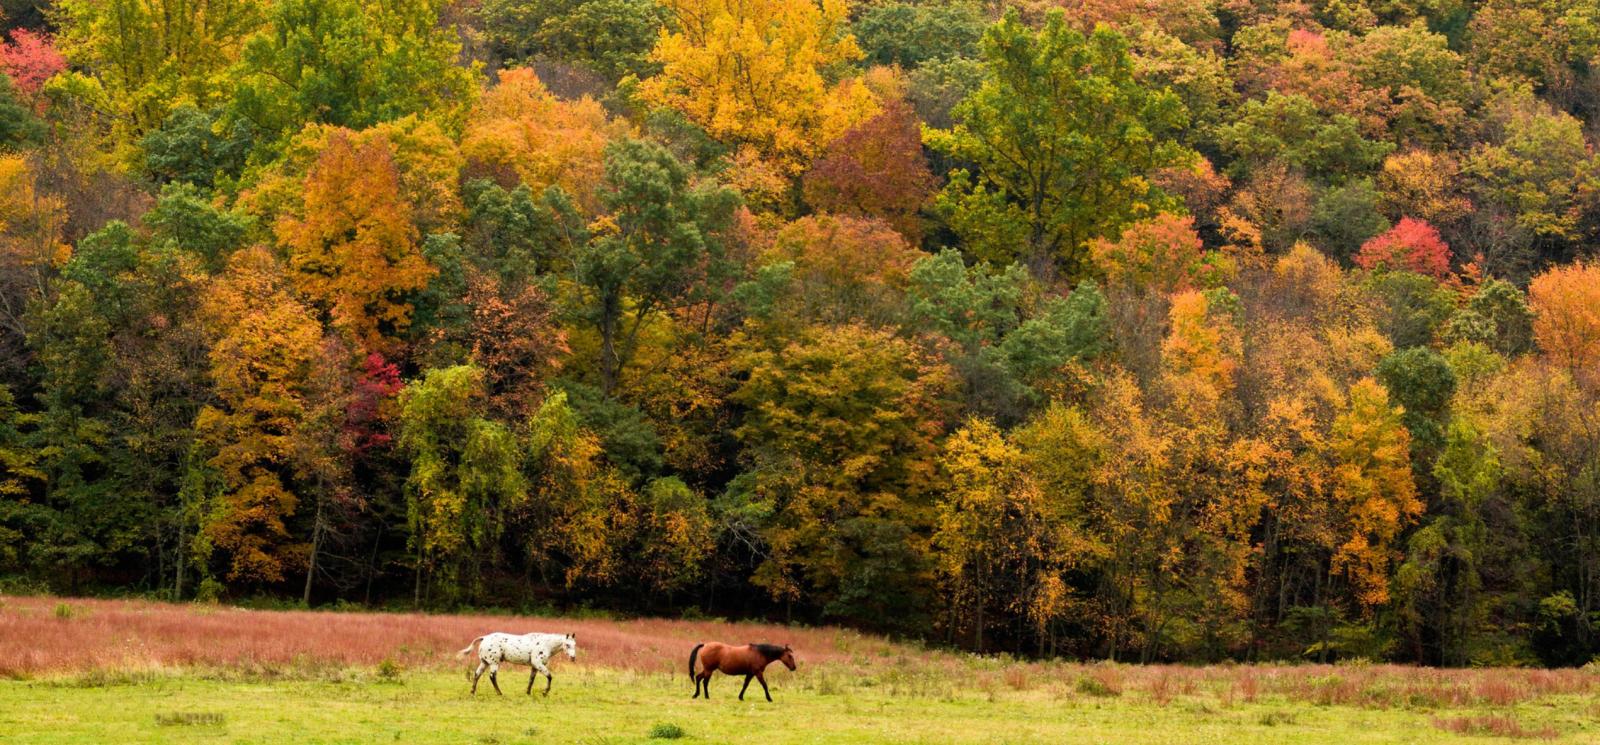 2 caballos caminando por el campo en otoño (Flickr@Nilesh-Khadse)